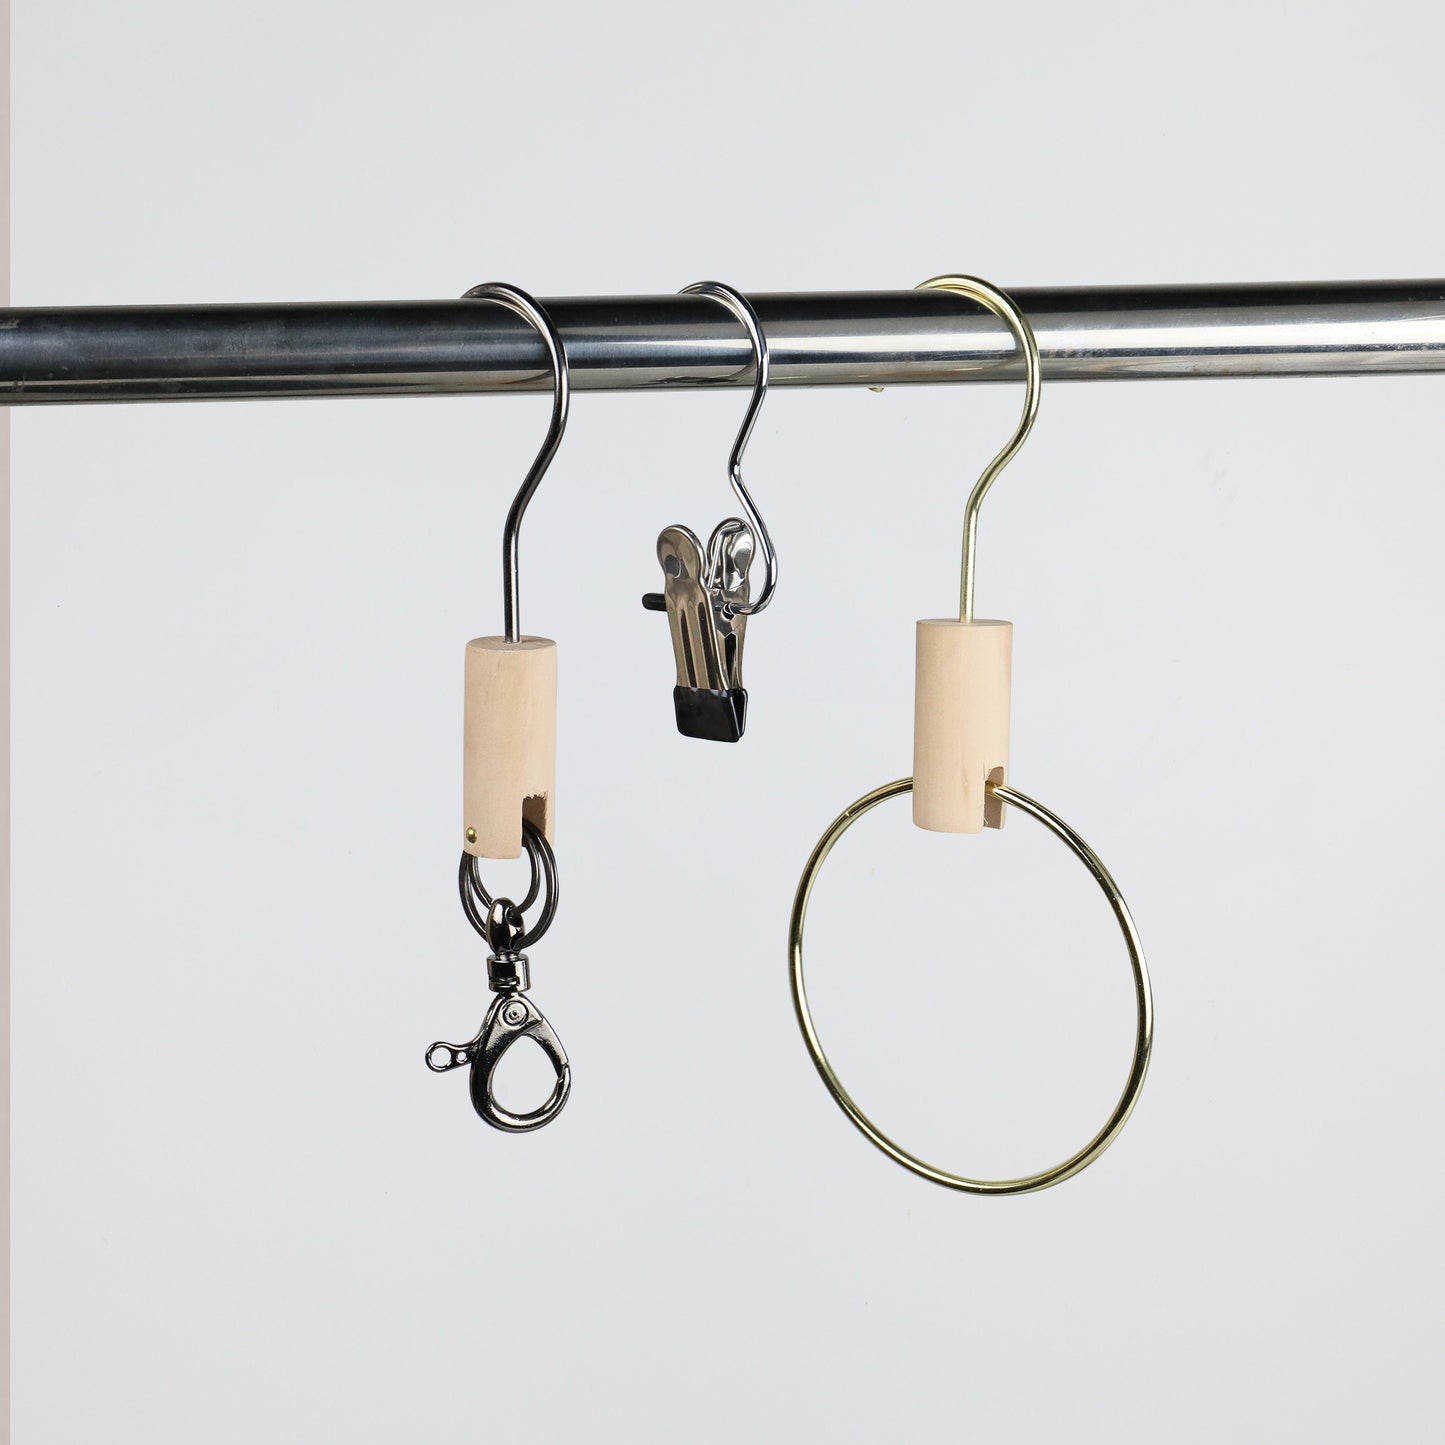 Solid Wood Metal Round Hook, Clothing Store Multifunctional Hooks for Jeans/Pants, Bathroom Towel Metal Clips,Scarf Hangers Racks Hook DE-LIANG